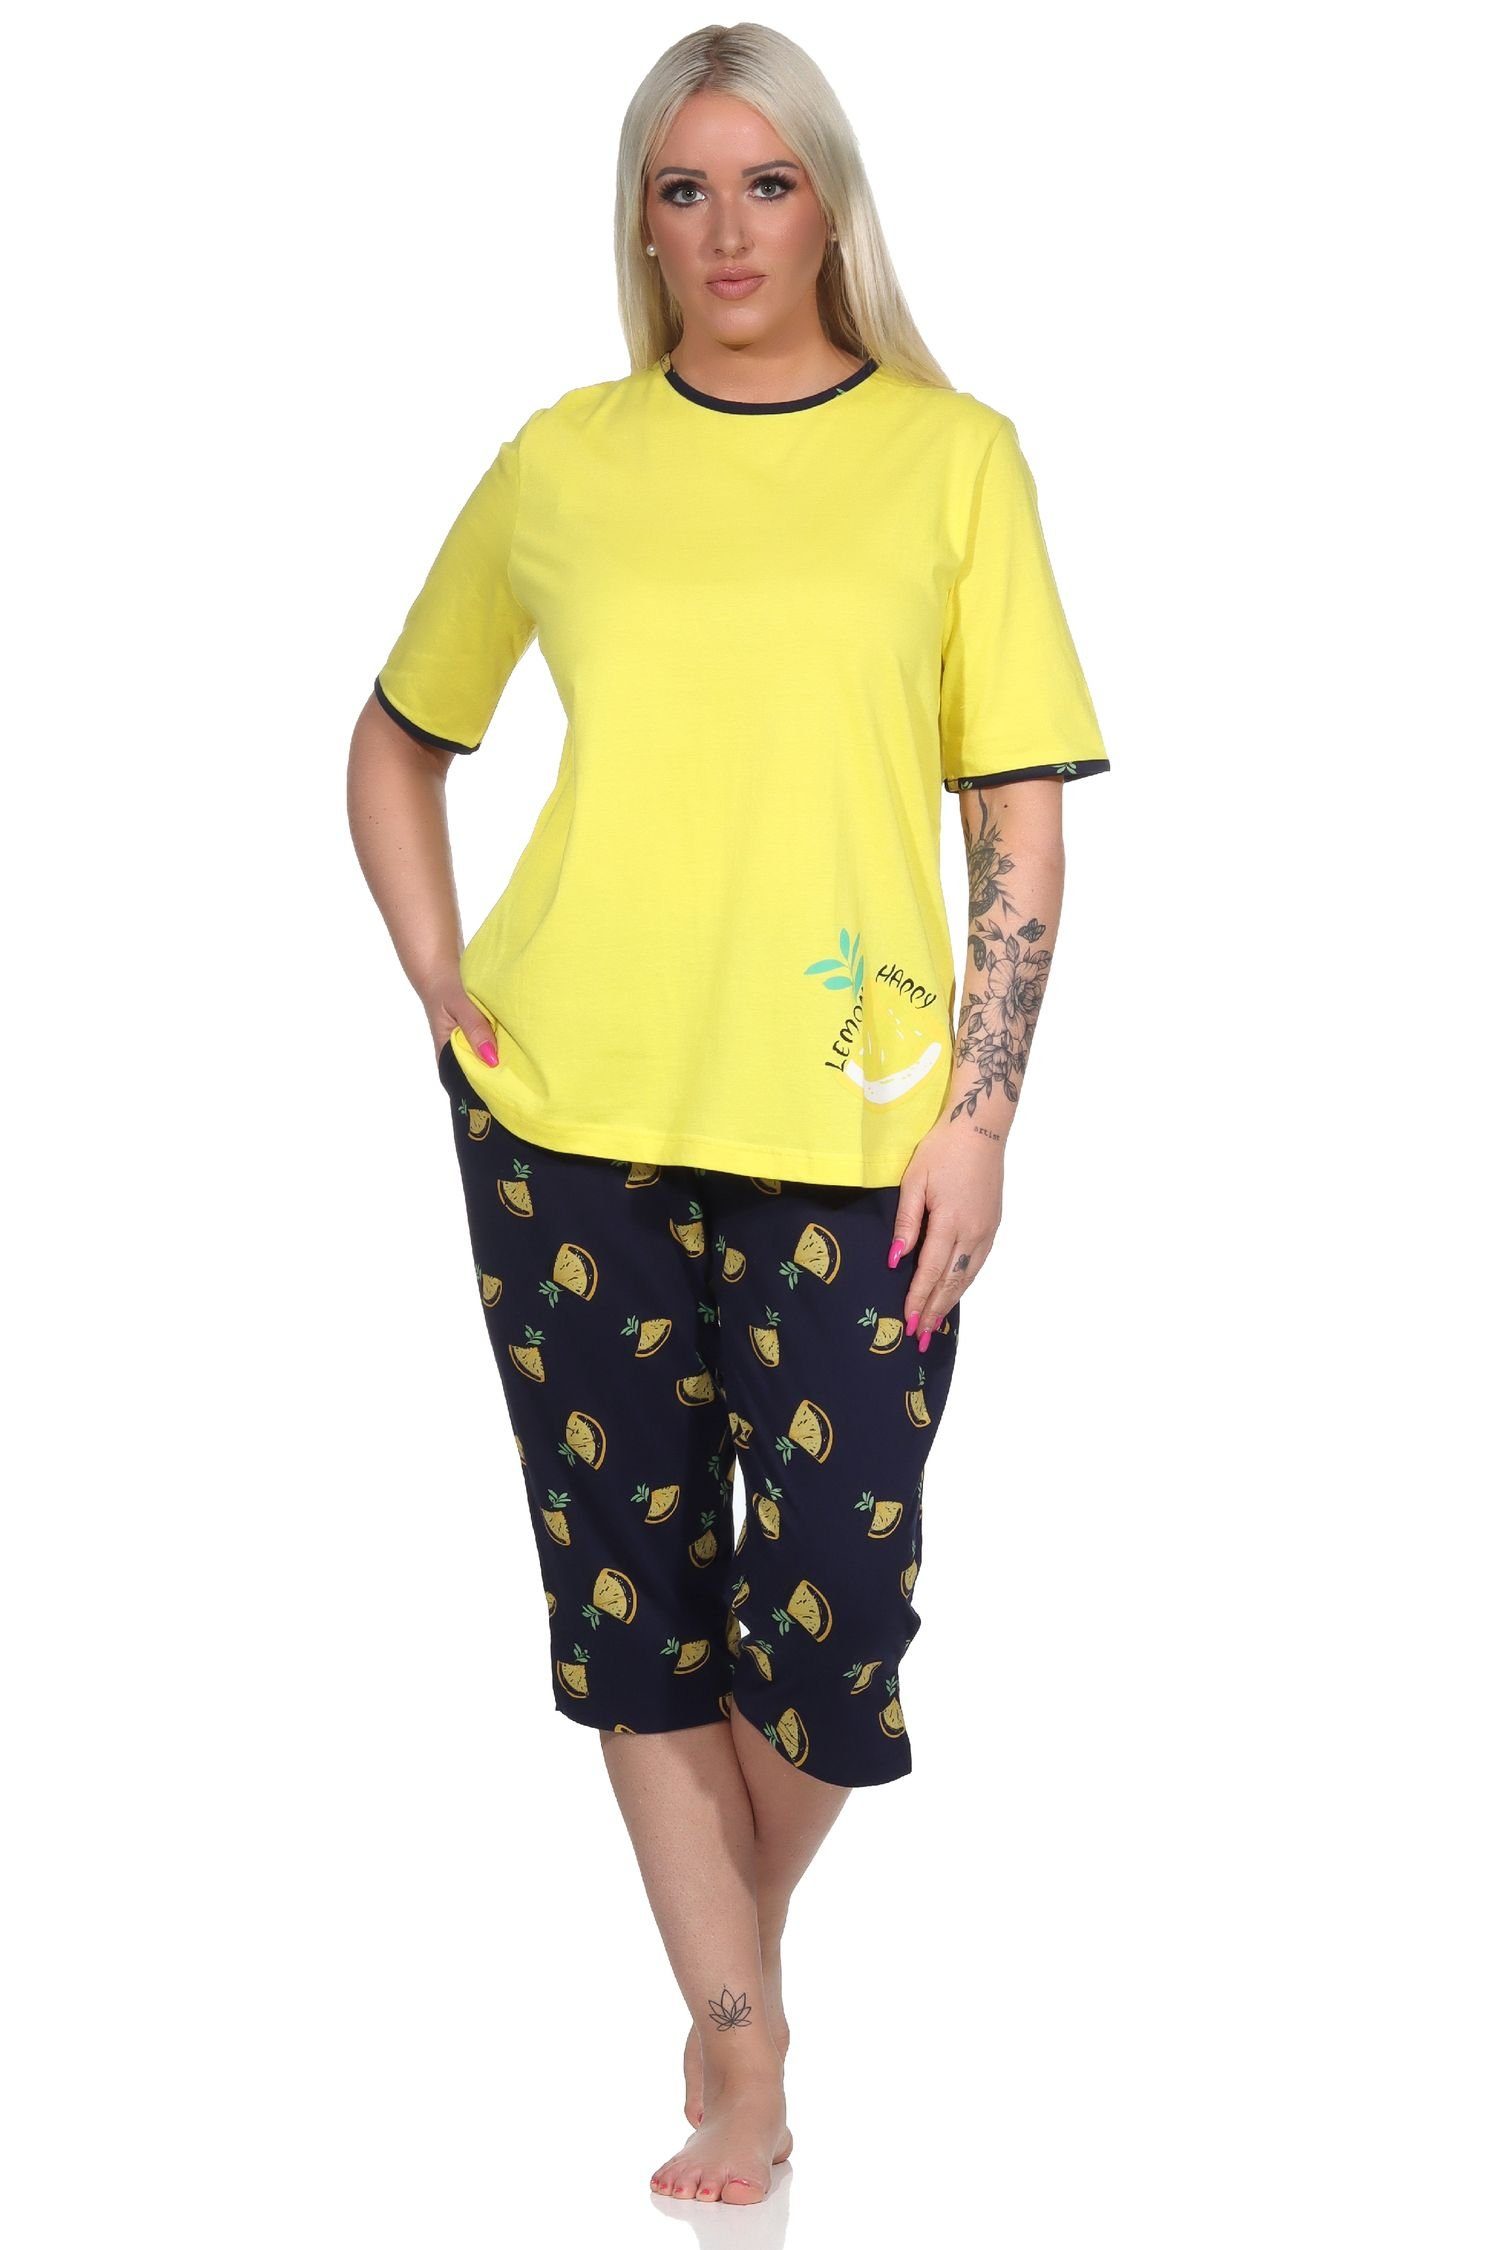 Normann Pyjama Süsser Damen kurzarm Capri Schlafanzug mit Zitronen als Motiv gelb